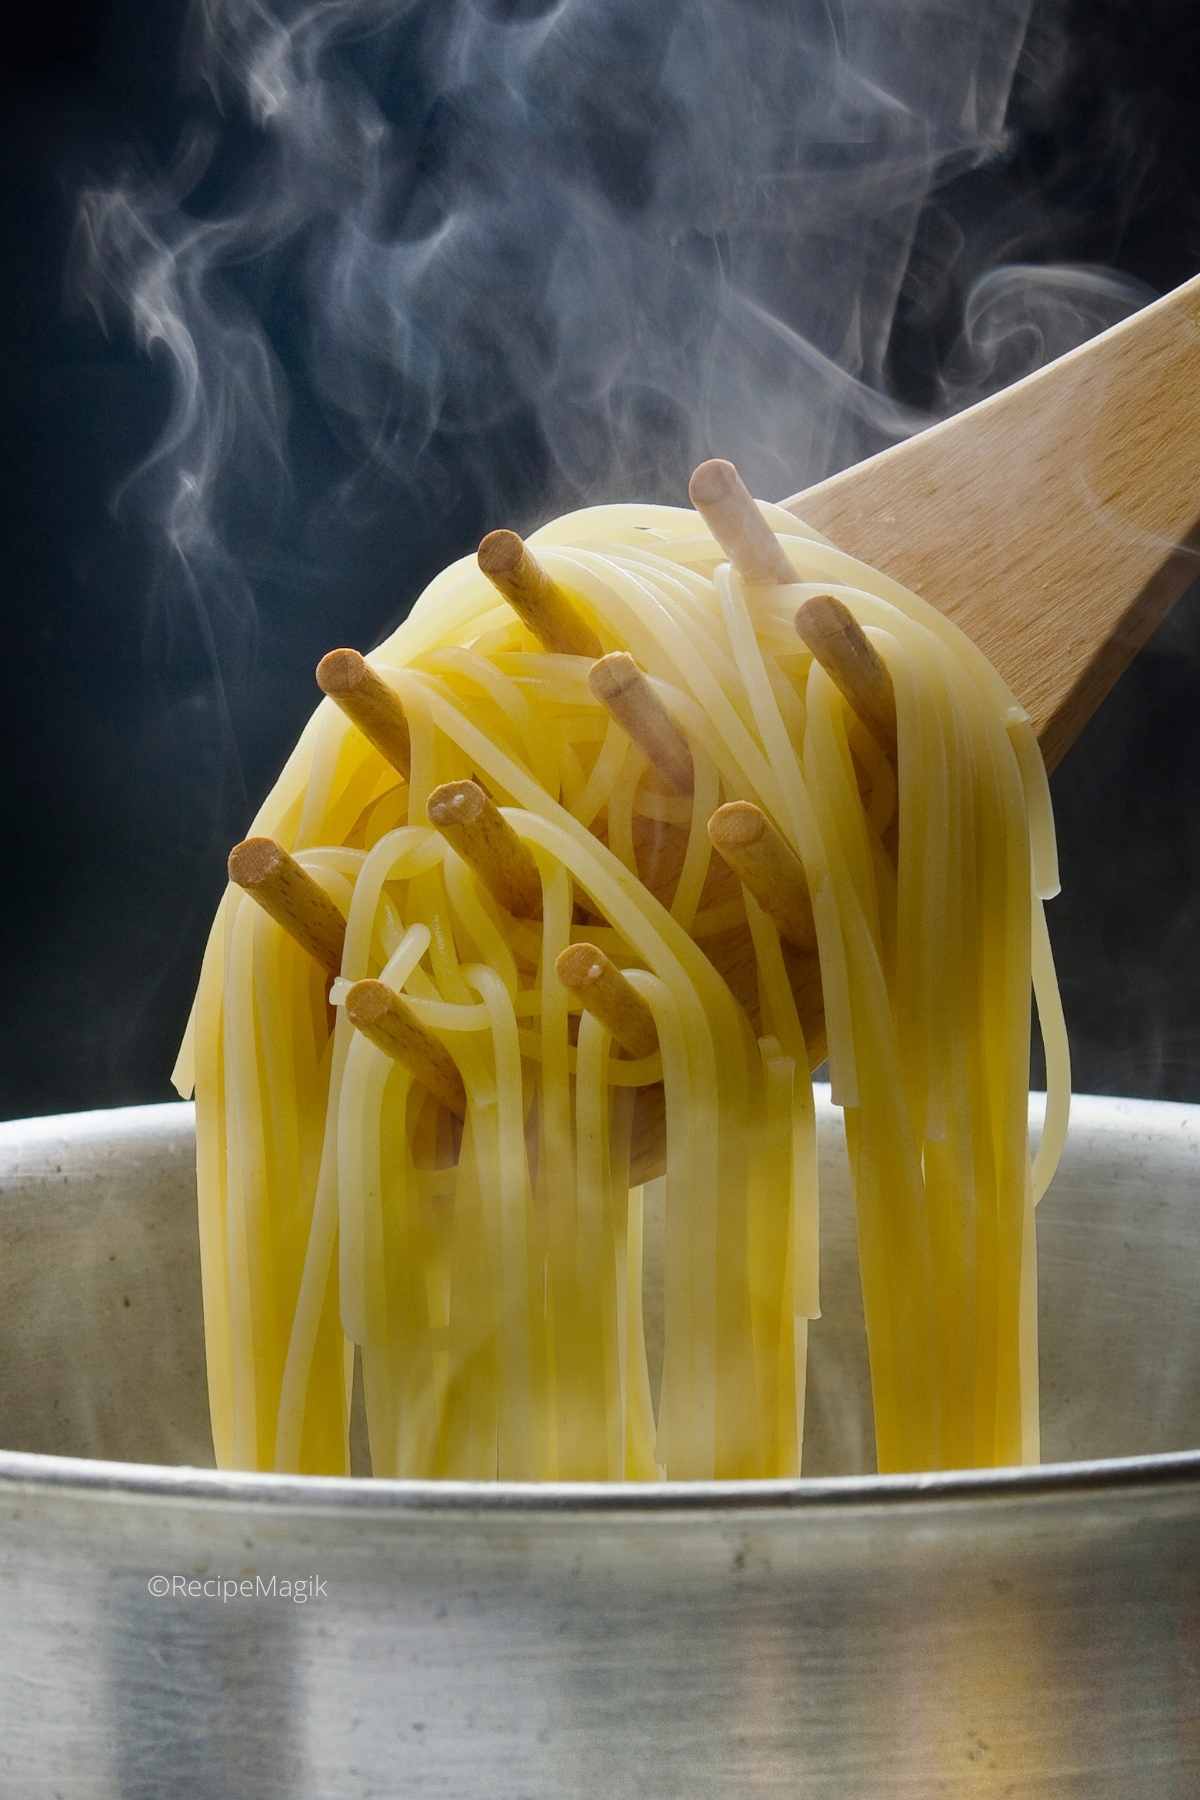 cooking pasta until al dente